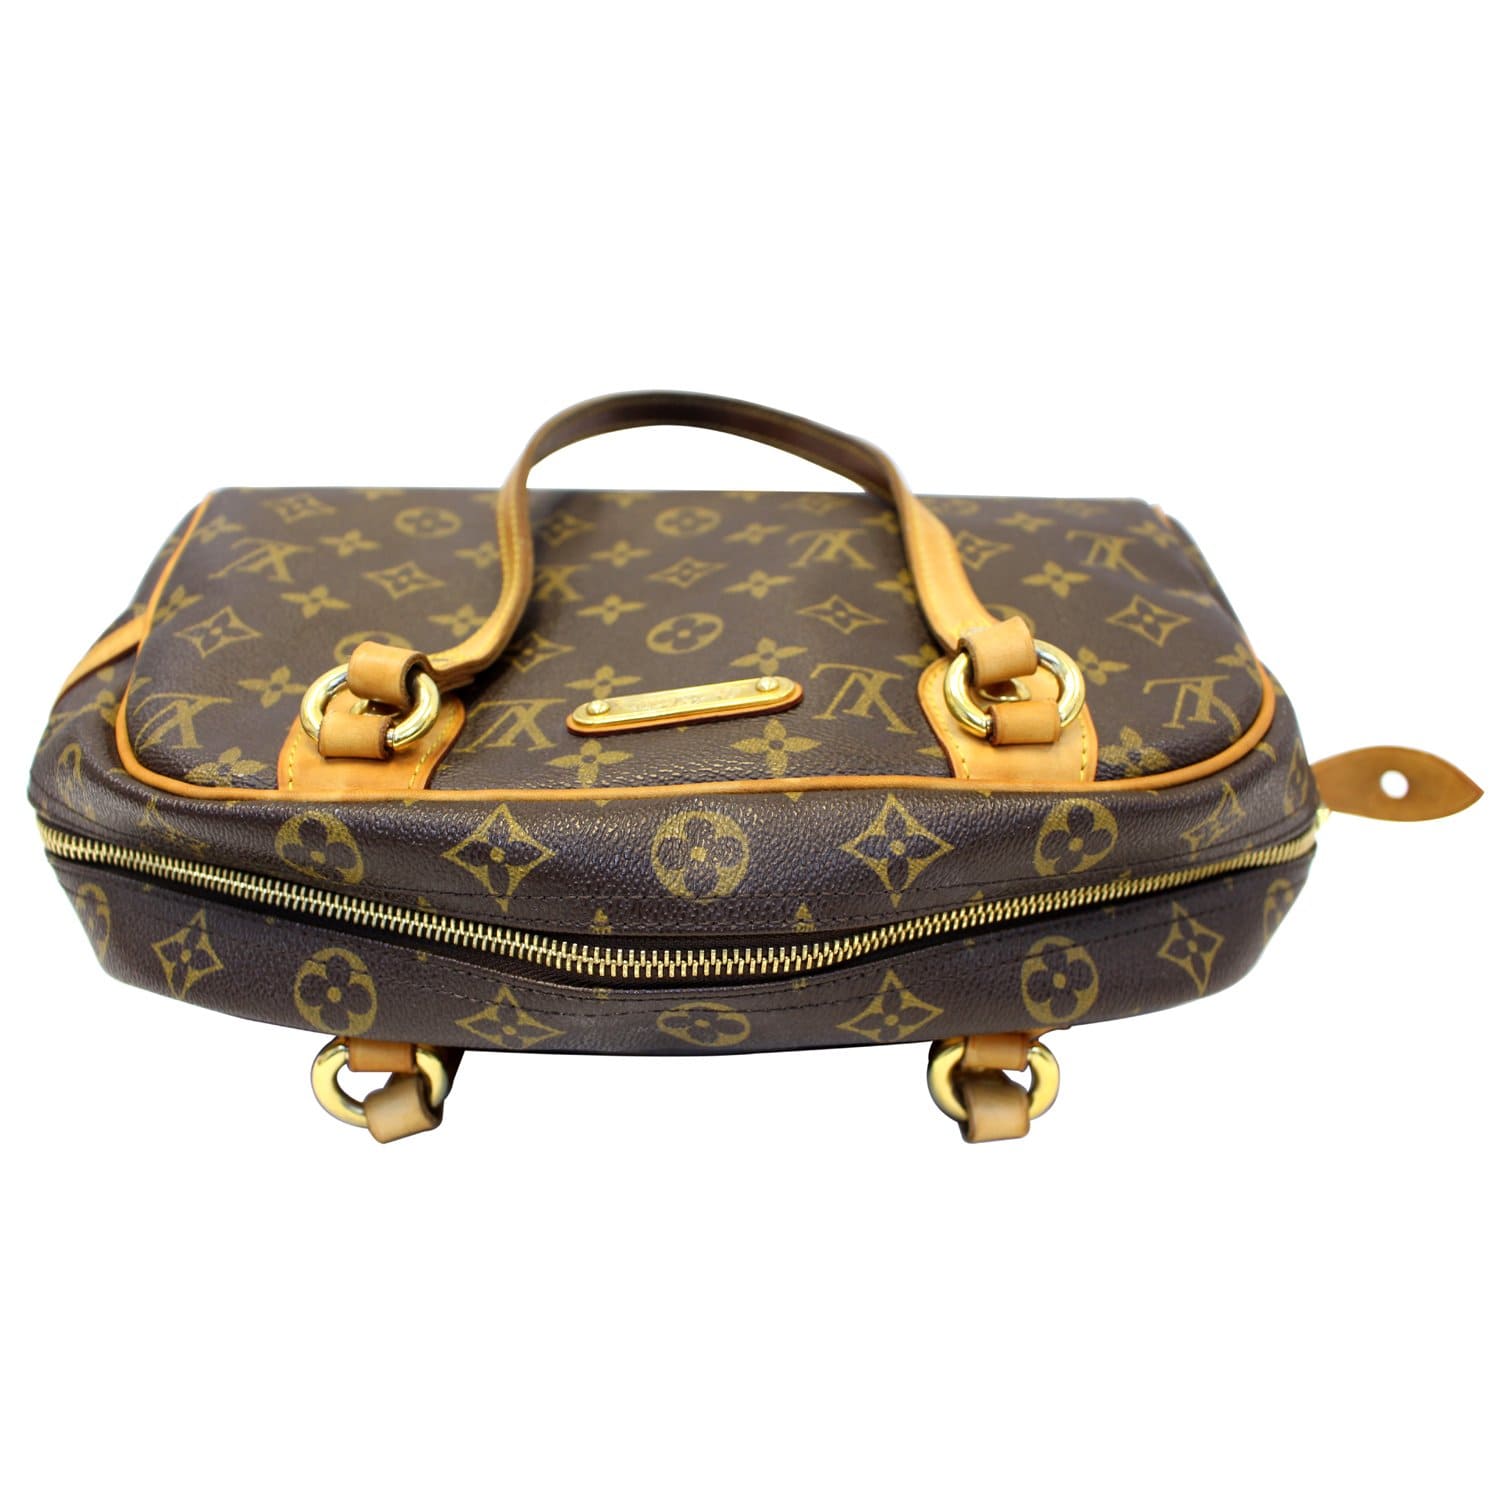 Louis Vuitton Montorgueil PM Handbag Purse Monogram M95565 SP1018 9884 –  brand-jfa